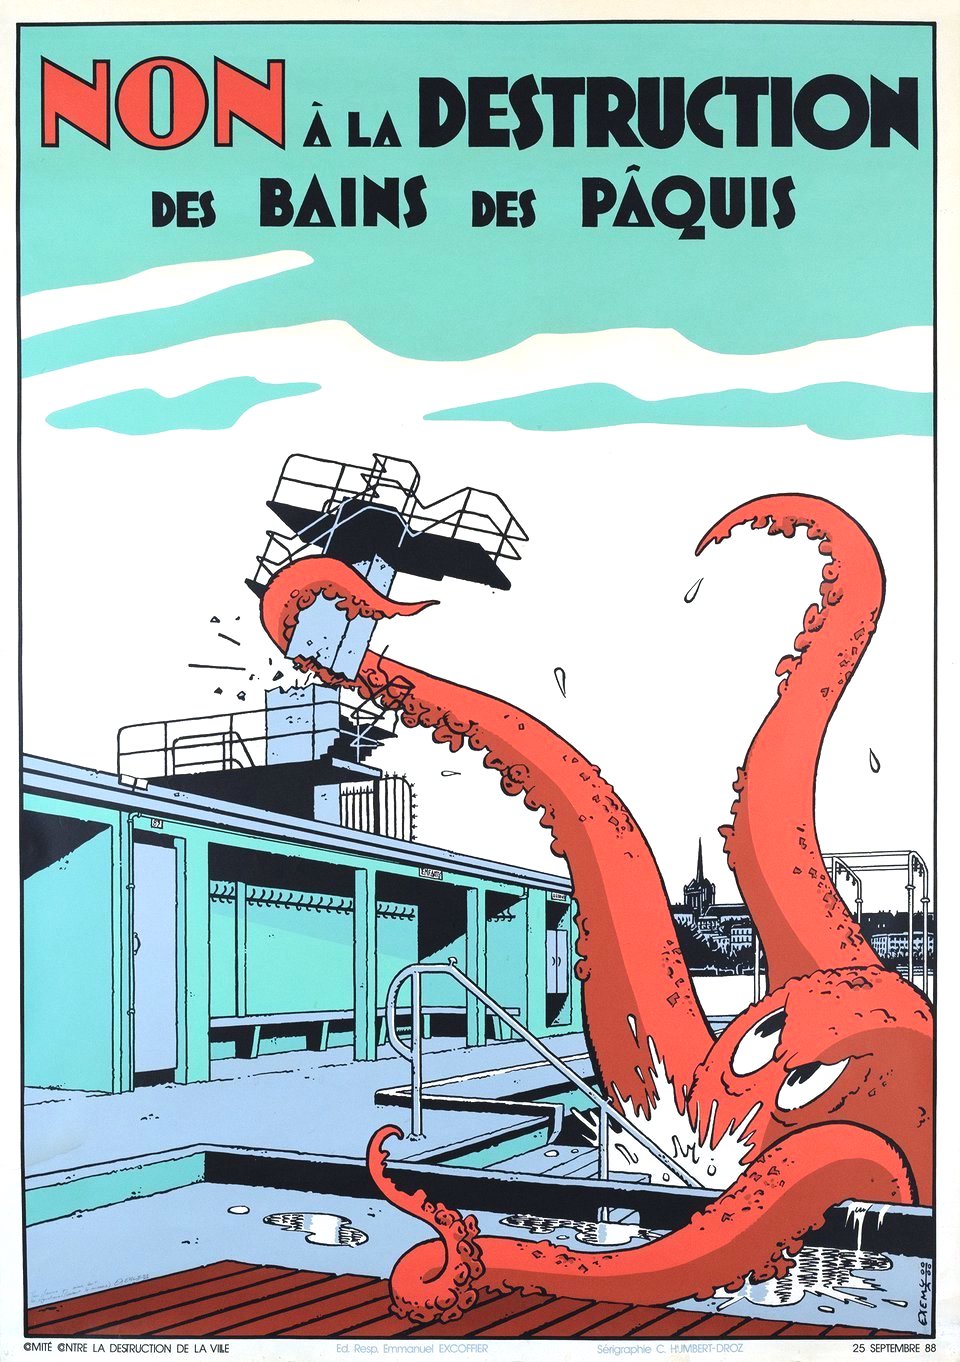 a 1988 political poster, Swiss? Non a la Destruction des Bains des Paquis, a giant octopus destroys buildings